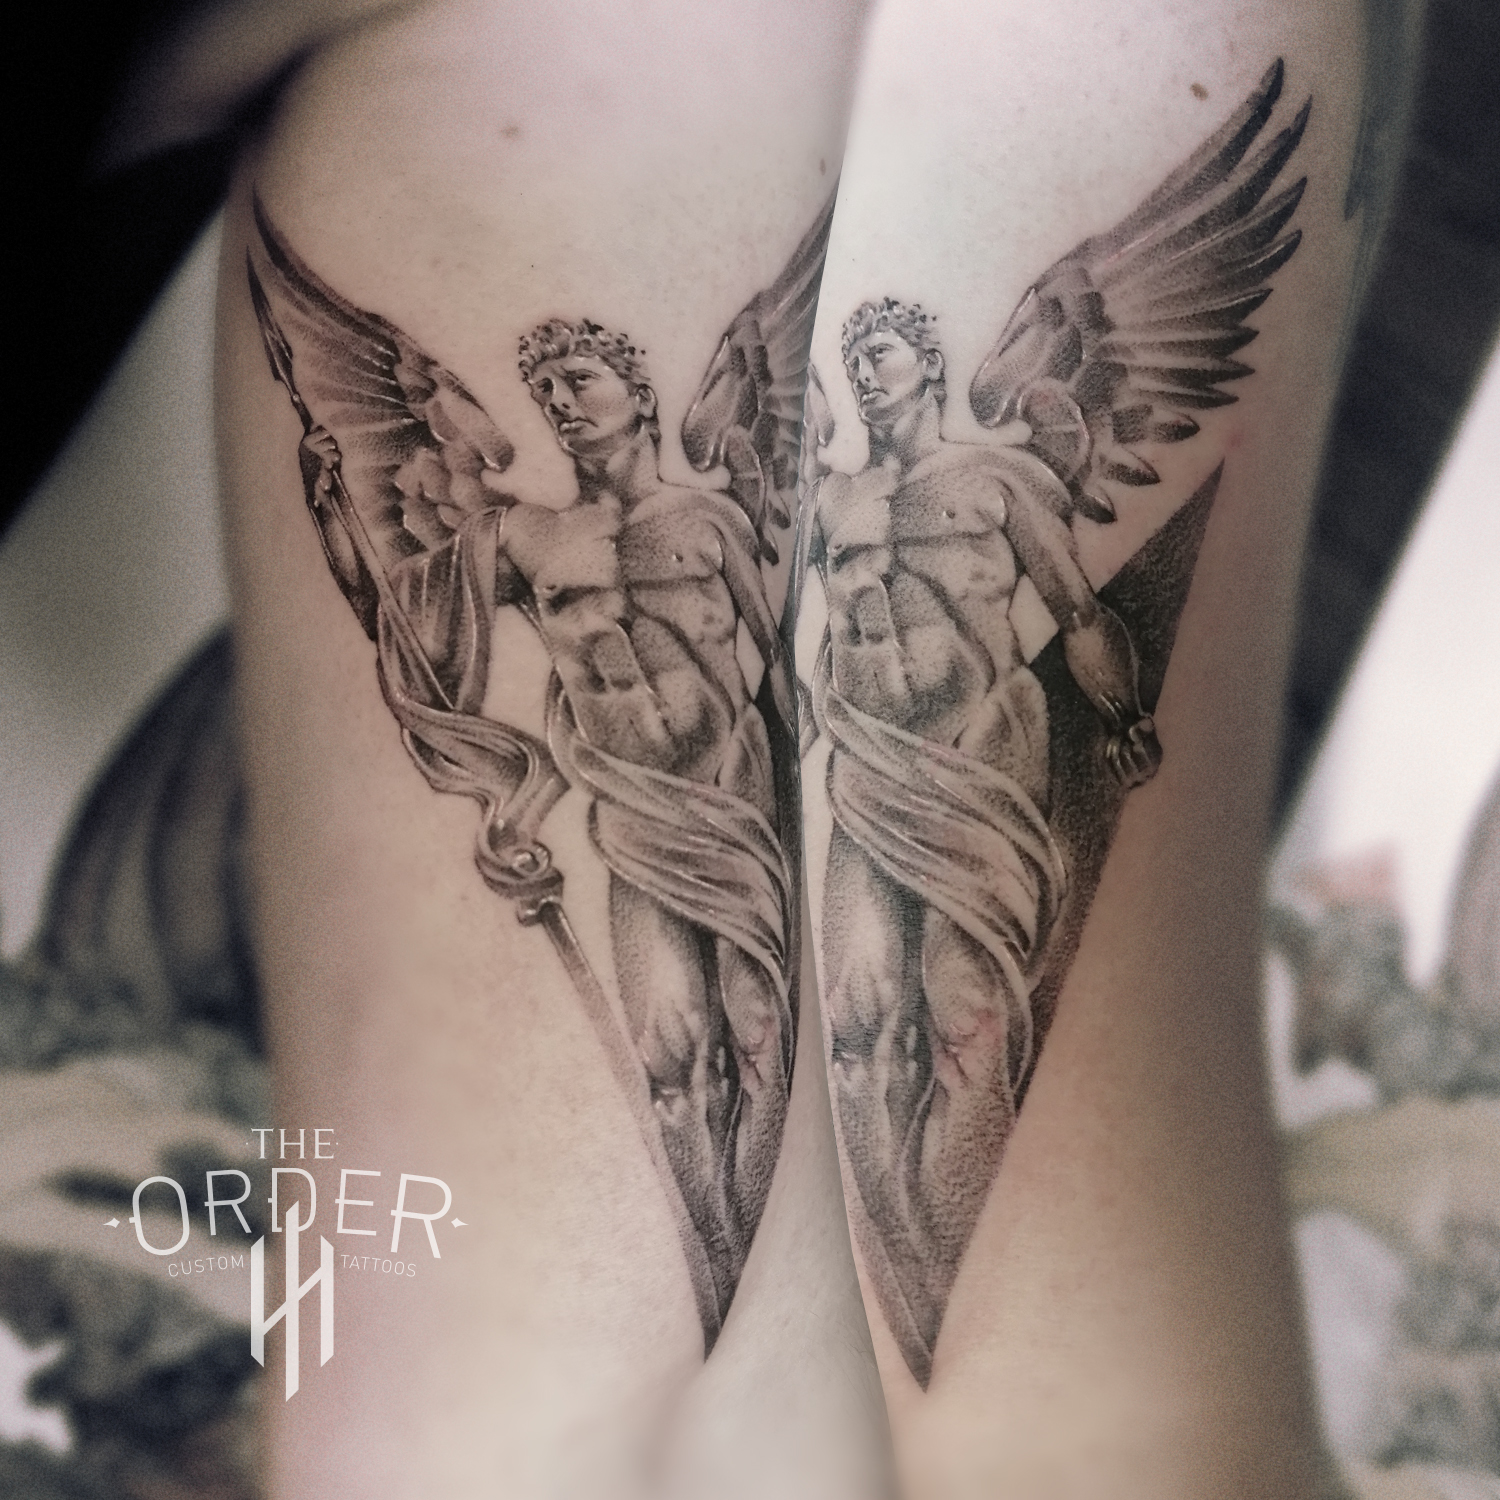 Statue Tattoo – The Order Custom Tattoos